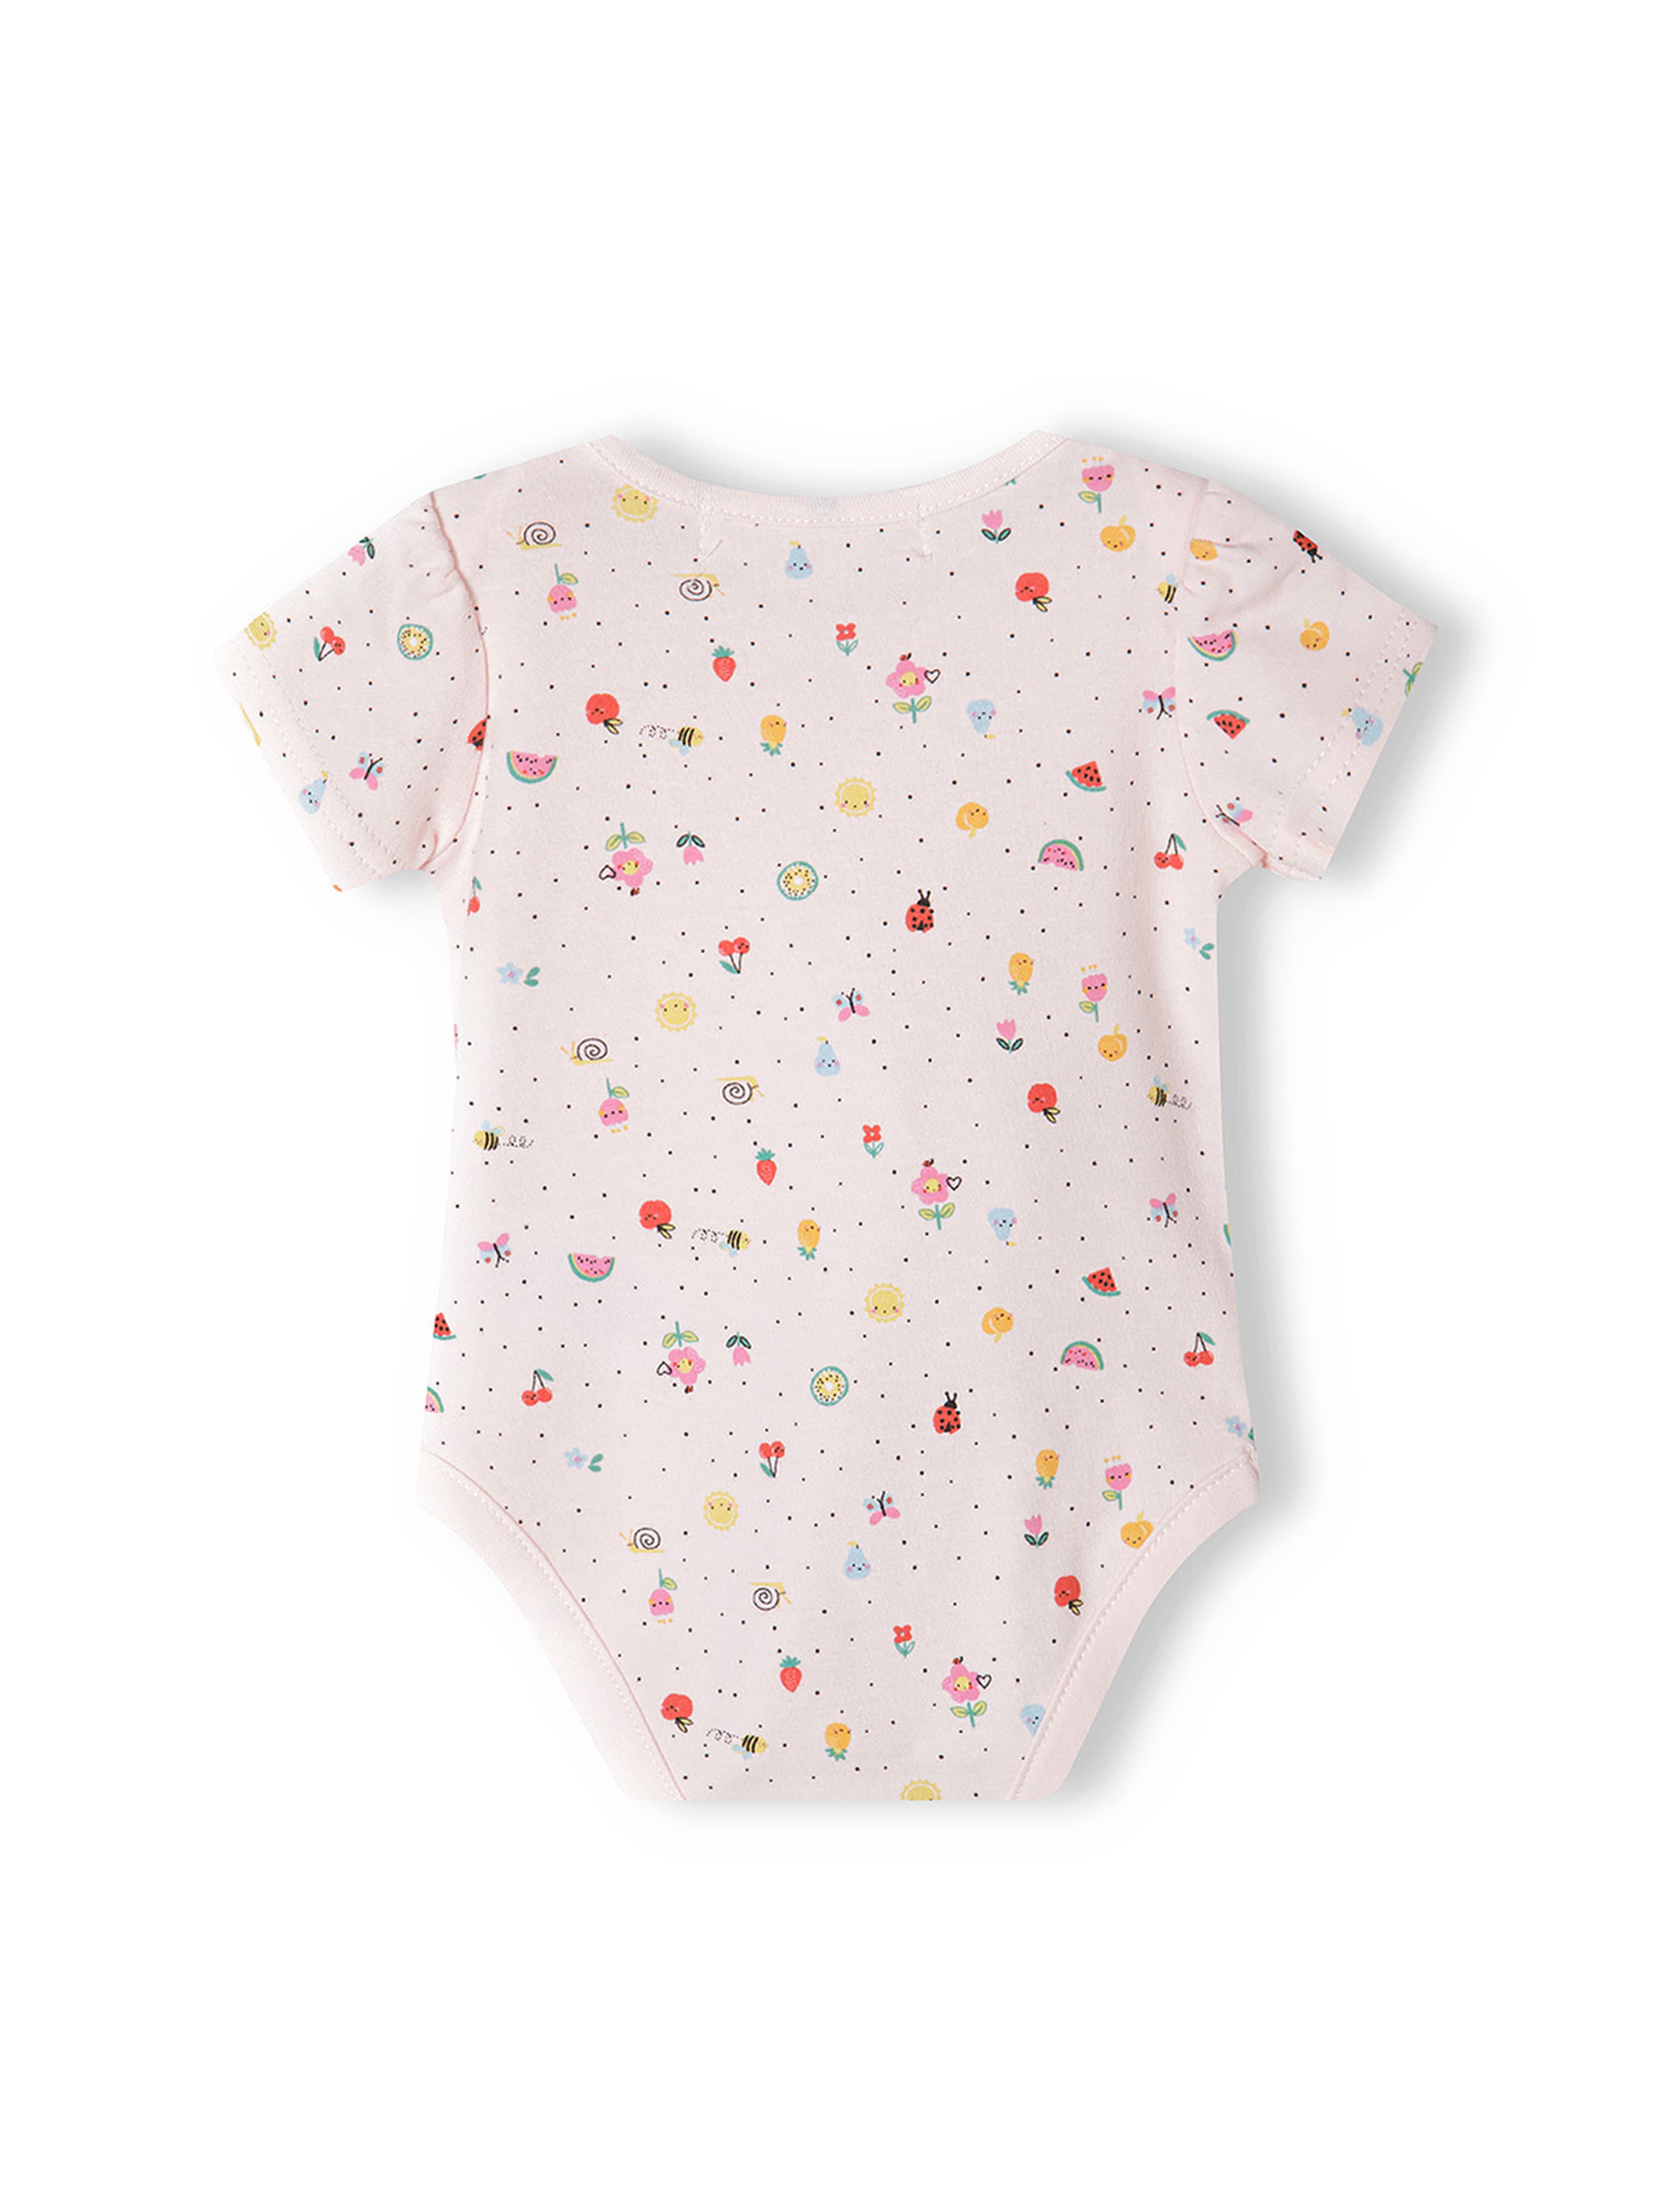 Komplet bawełniany niemowlęcy- pajac + body + półśpiochy + śliniak